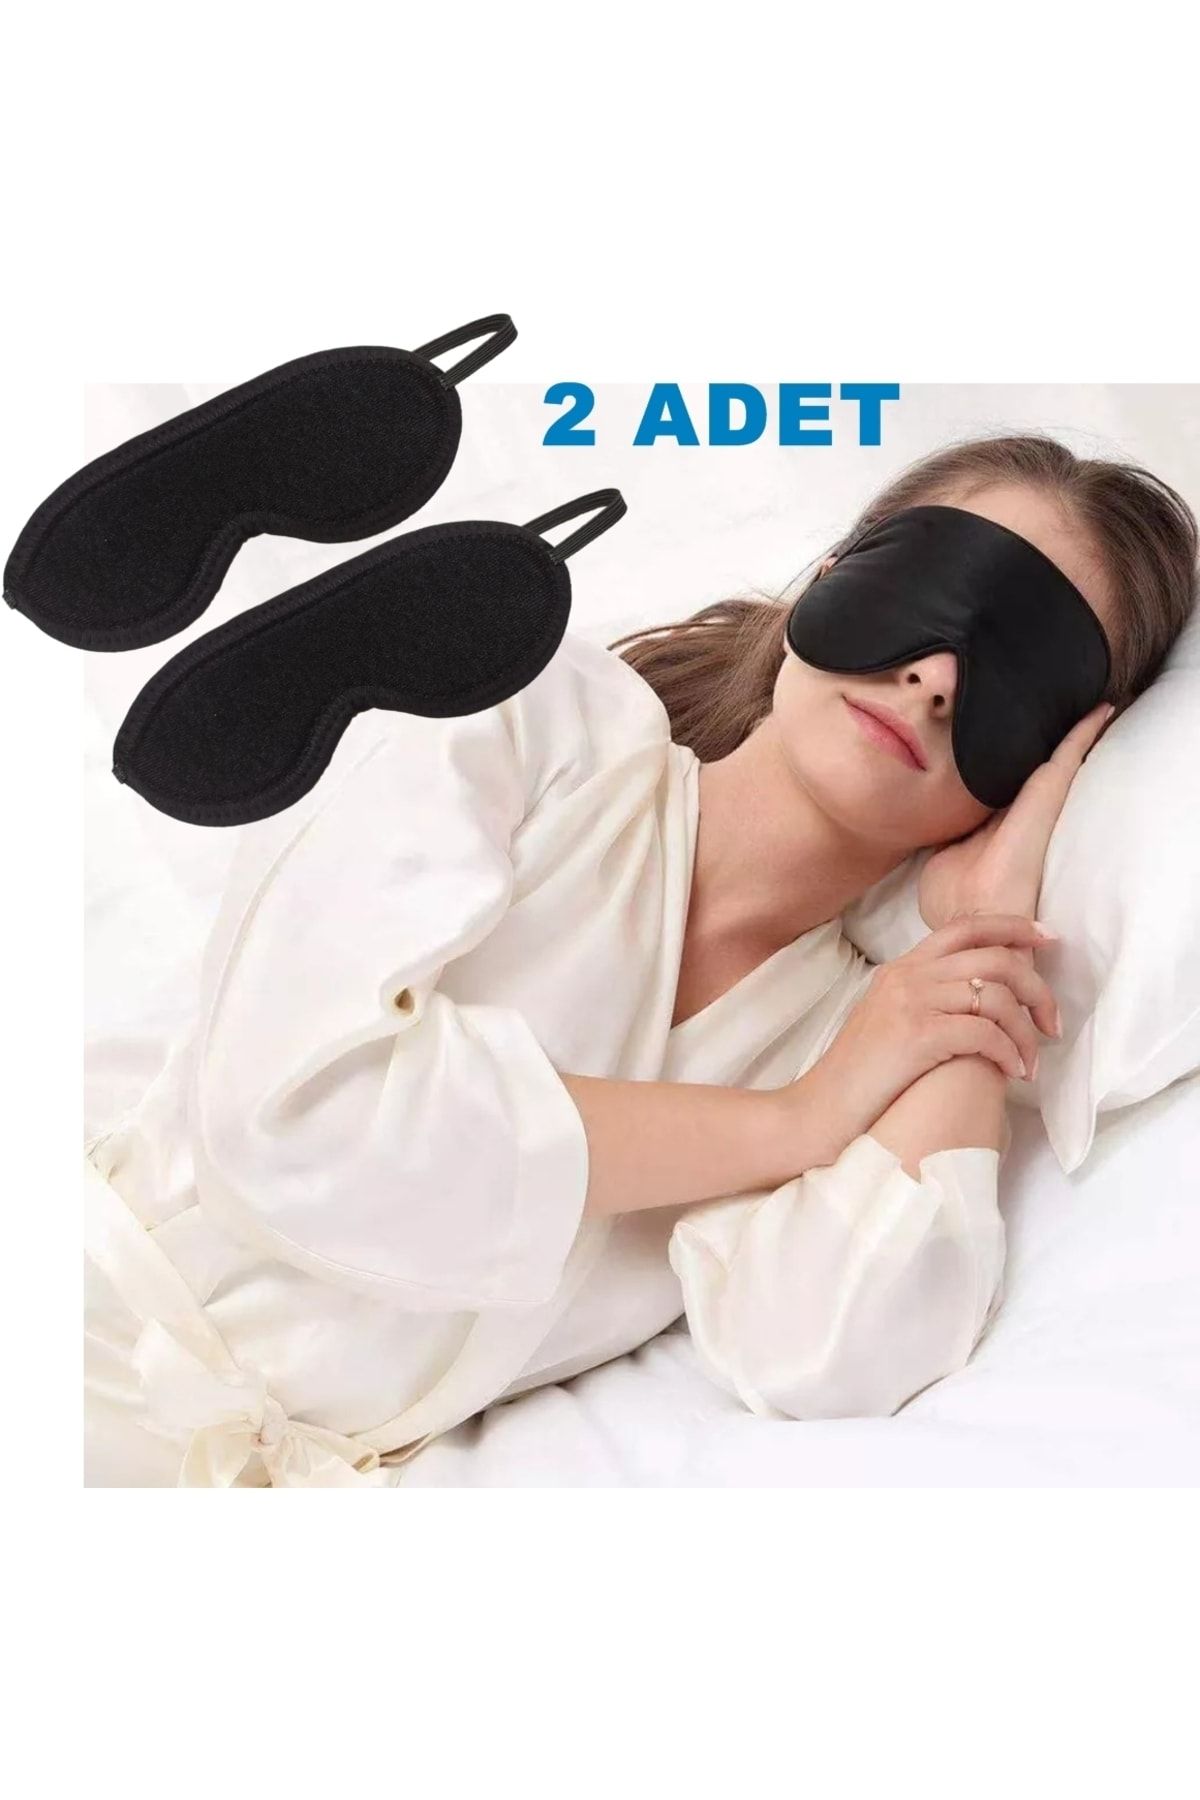 ARWEX Siyah Uyku Göz Bandı Uyku Gözlüğü Uyku Göz Bandı Maskesi Işık Önleyici Gözlük Maske Bant